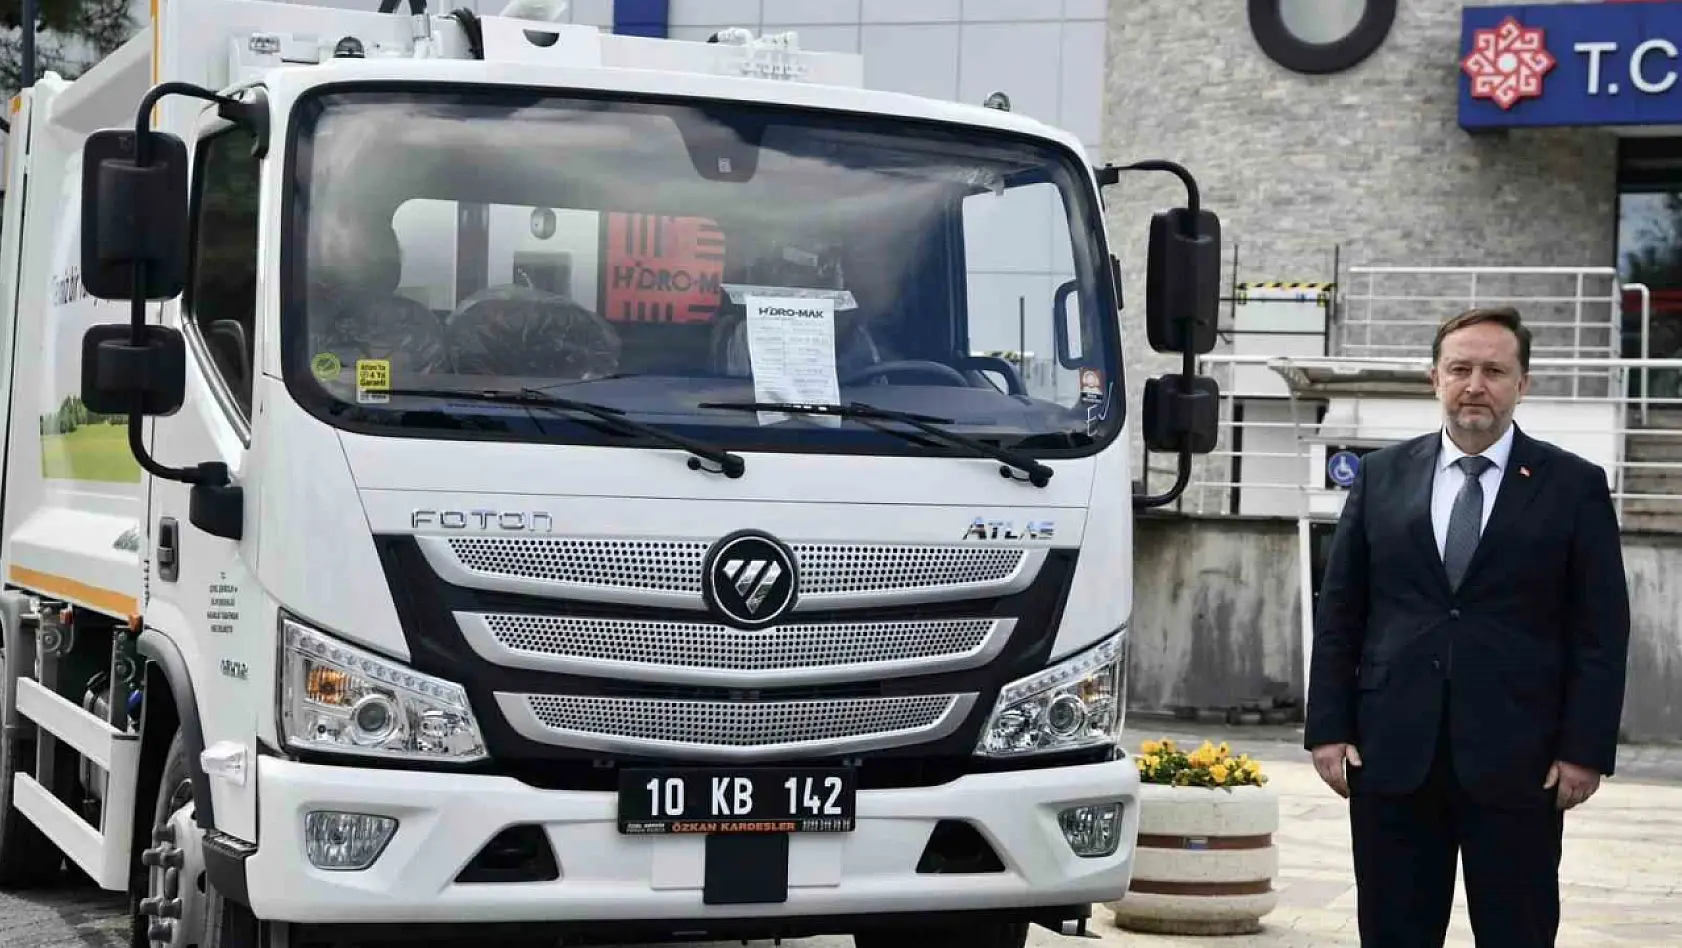 Çevre Bakanlığı'ndan Karesi'ye 2 çöp kamyonu